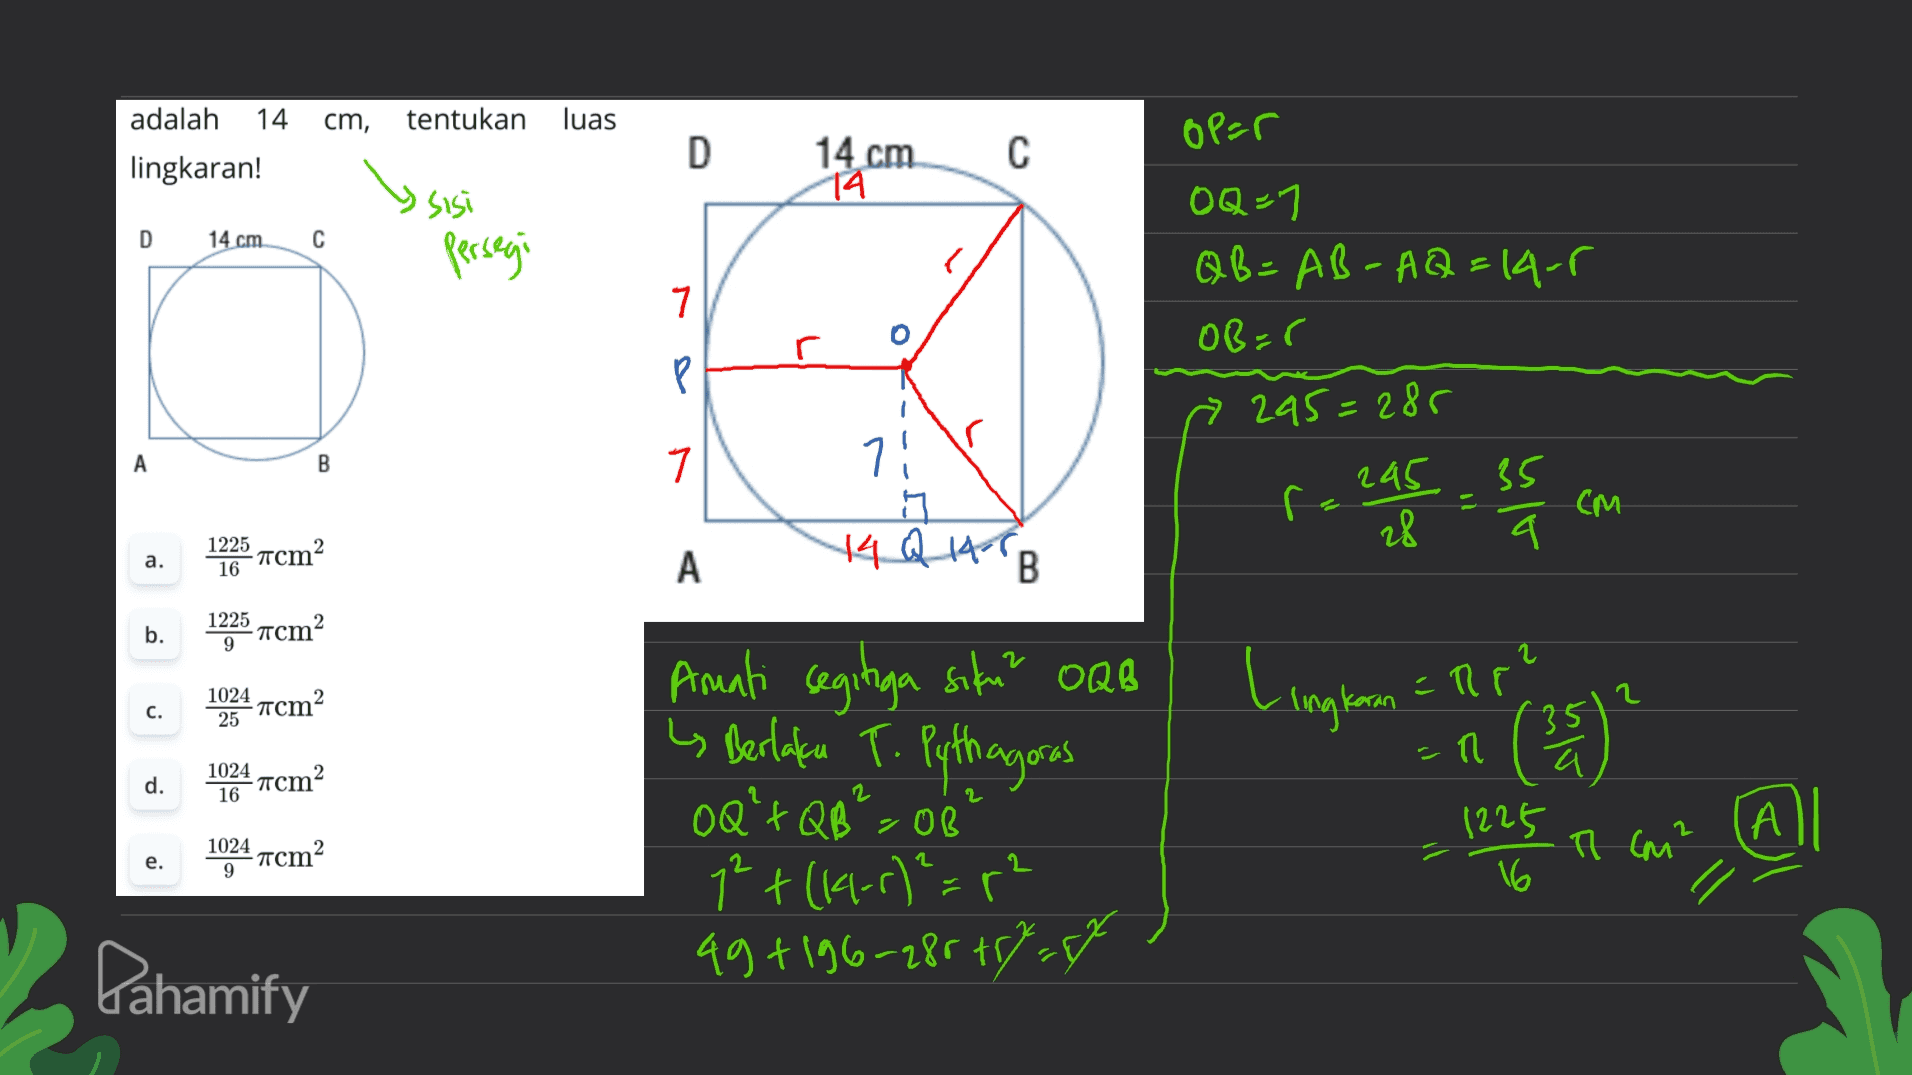 cm, tentukan luas adalah 14 lingkaran! D op=r с 14 cm 14 sisi D 14 cm С persegi OQ-1 QB=AB-AQ=14-5 OB=0 7 P Р » 295=285 A B 7 71 ng 14 Q 1967 B f eas essa ca См a. 1225 -acm2 16 A b. 1225 -acm2 9 Amati segitiga siku? OQB c. 1024 -acm 2 25 Lingkan = Rp? Celeste n i Berlaku T. Pythagoras OQ'+Q8>02 1024 16 d. acm2 1225 А 1024 -mcm2 9 1225 T (M² e. 1² + (1-r)²=r 49 +196-28 +7 Dahamify 